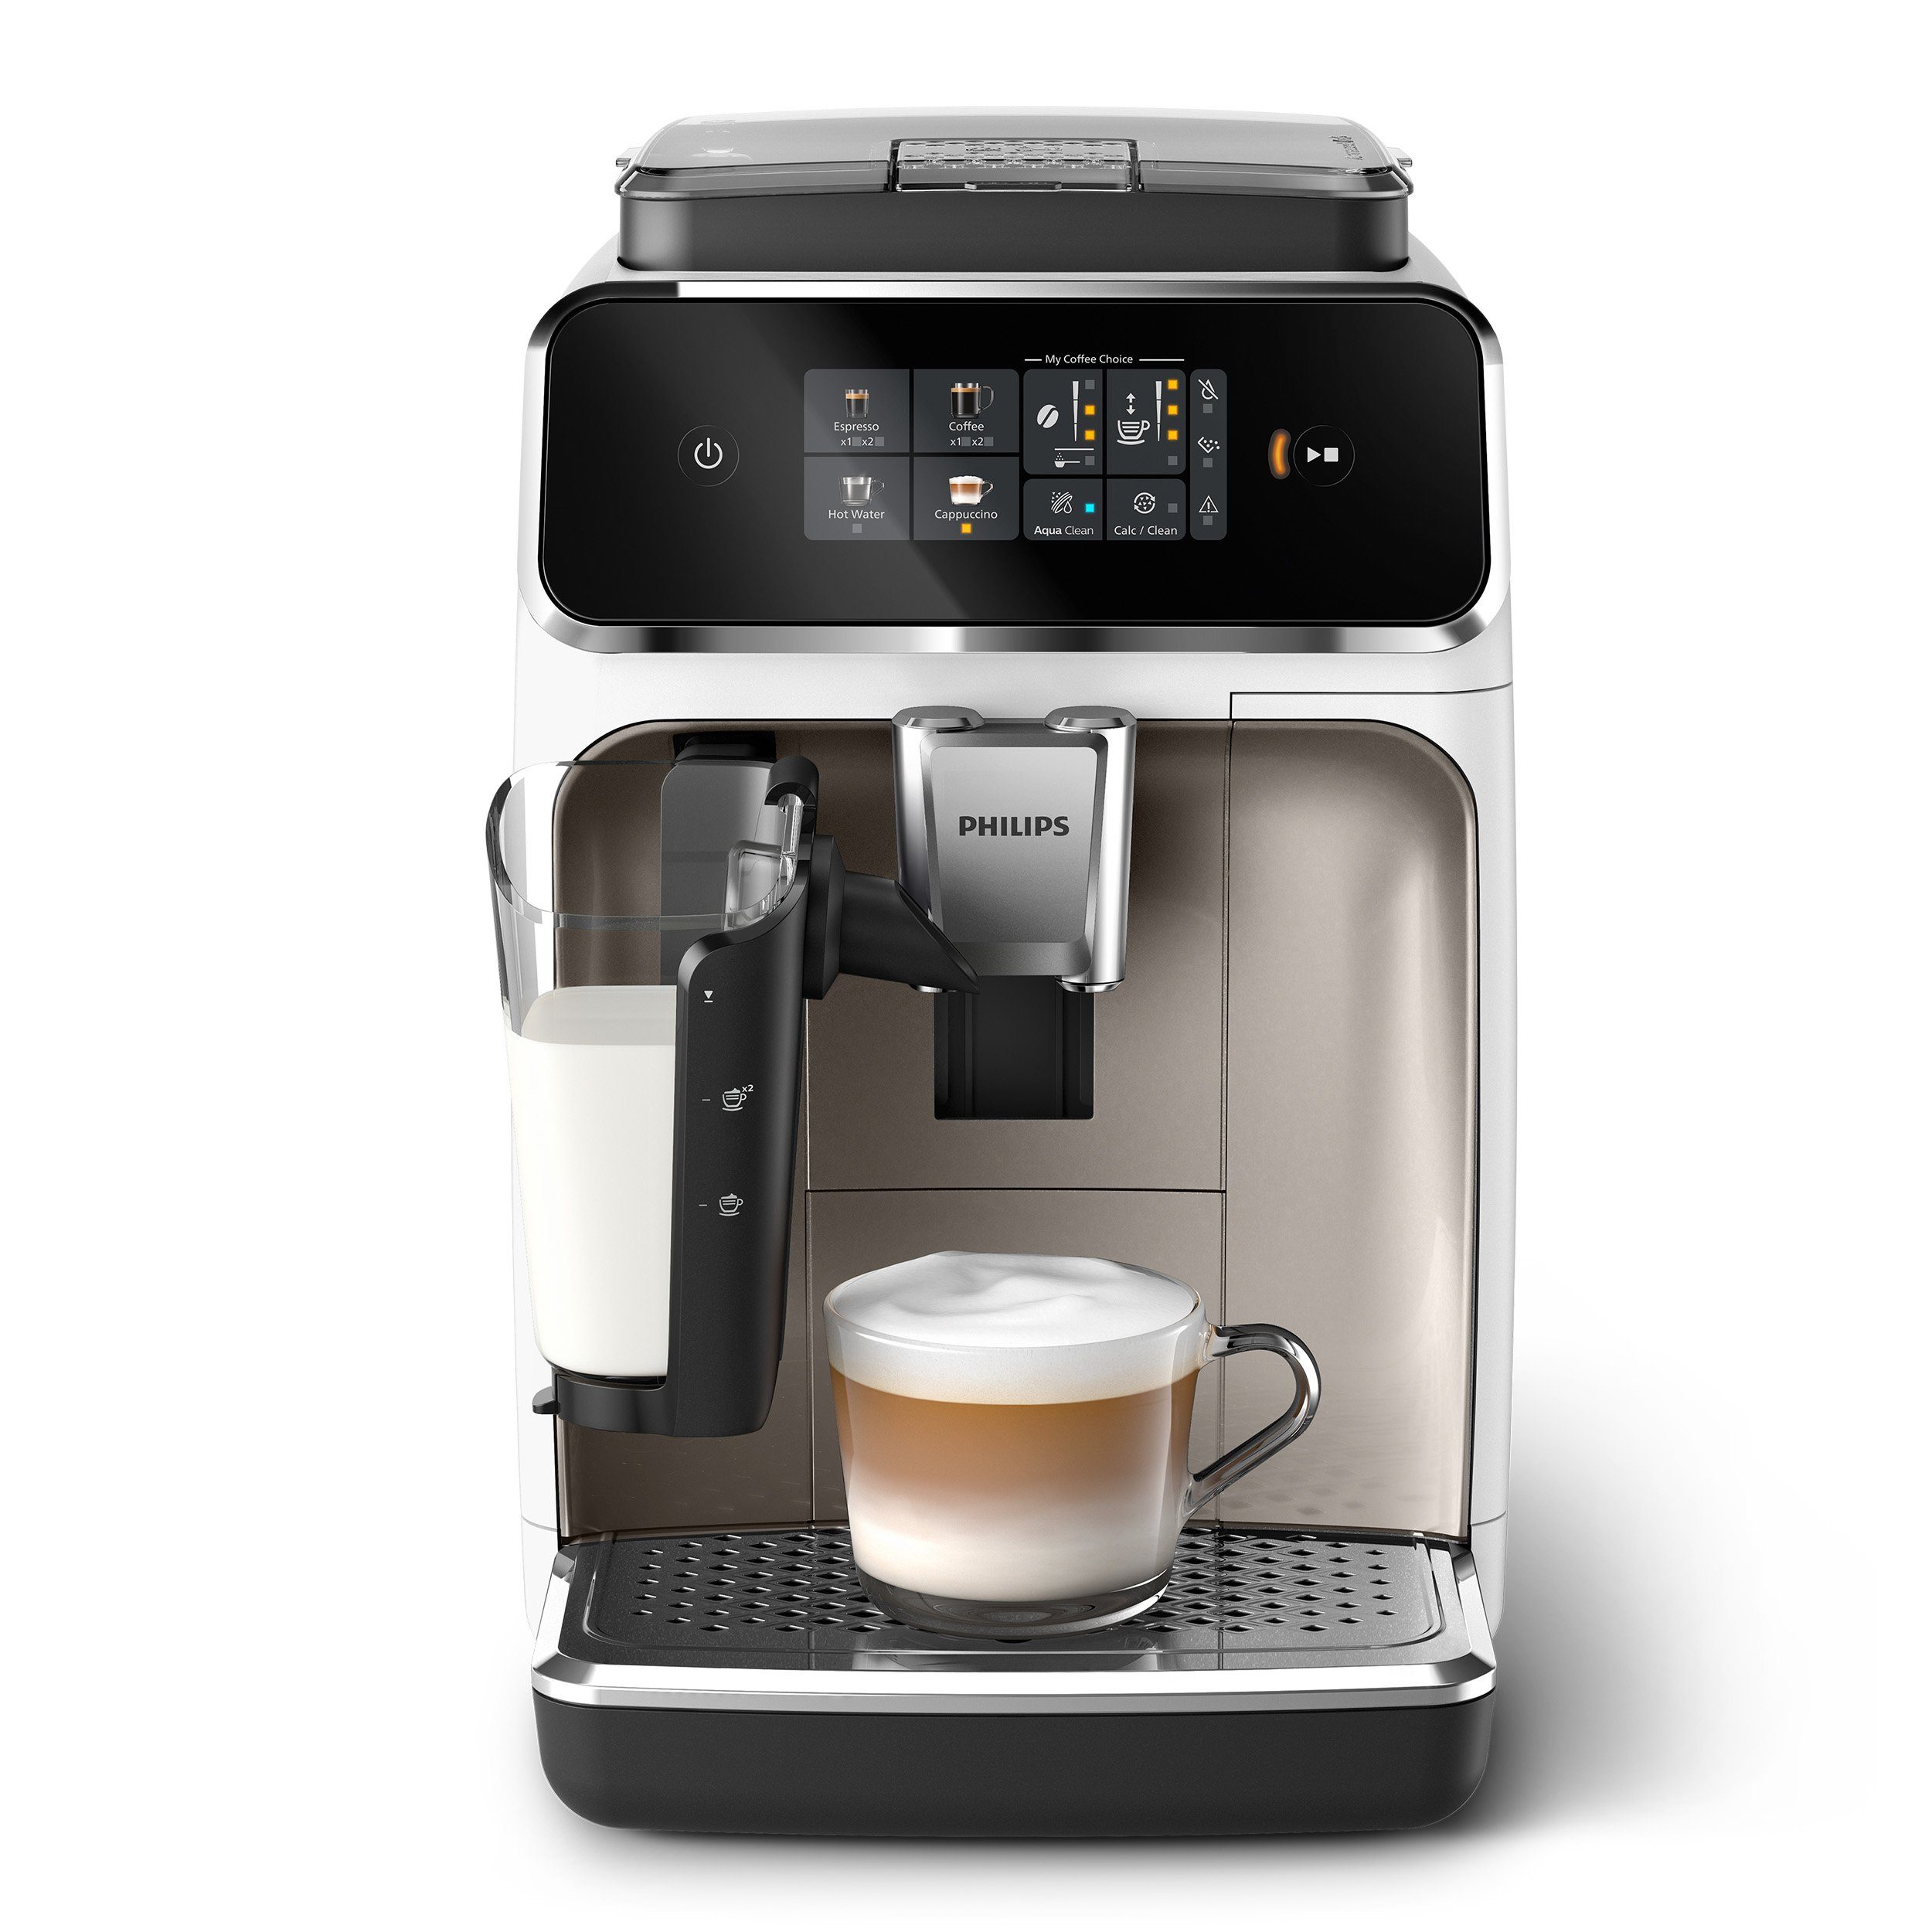 Series, LatteGo-Milchsystem, Weiß und Kaffeevollautomat Philips Chrom Kaffeespezialitäten, EP2333/40 2300 mit 4